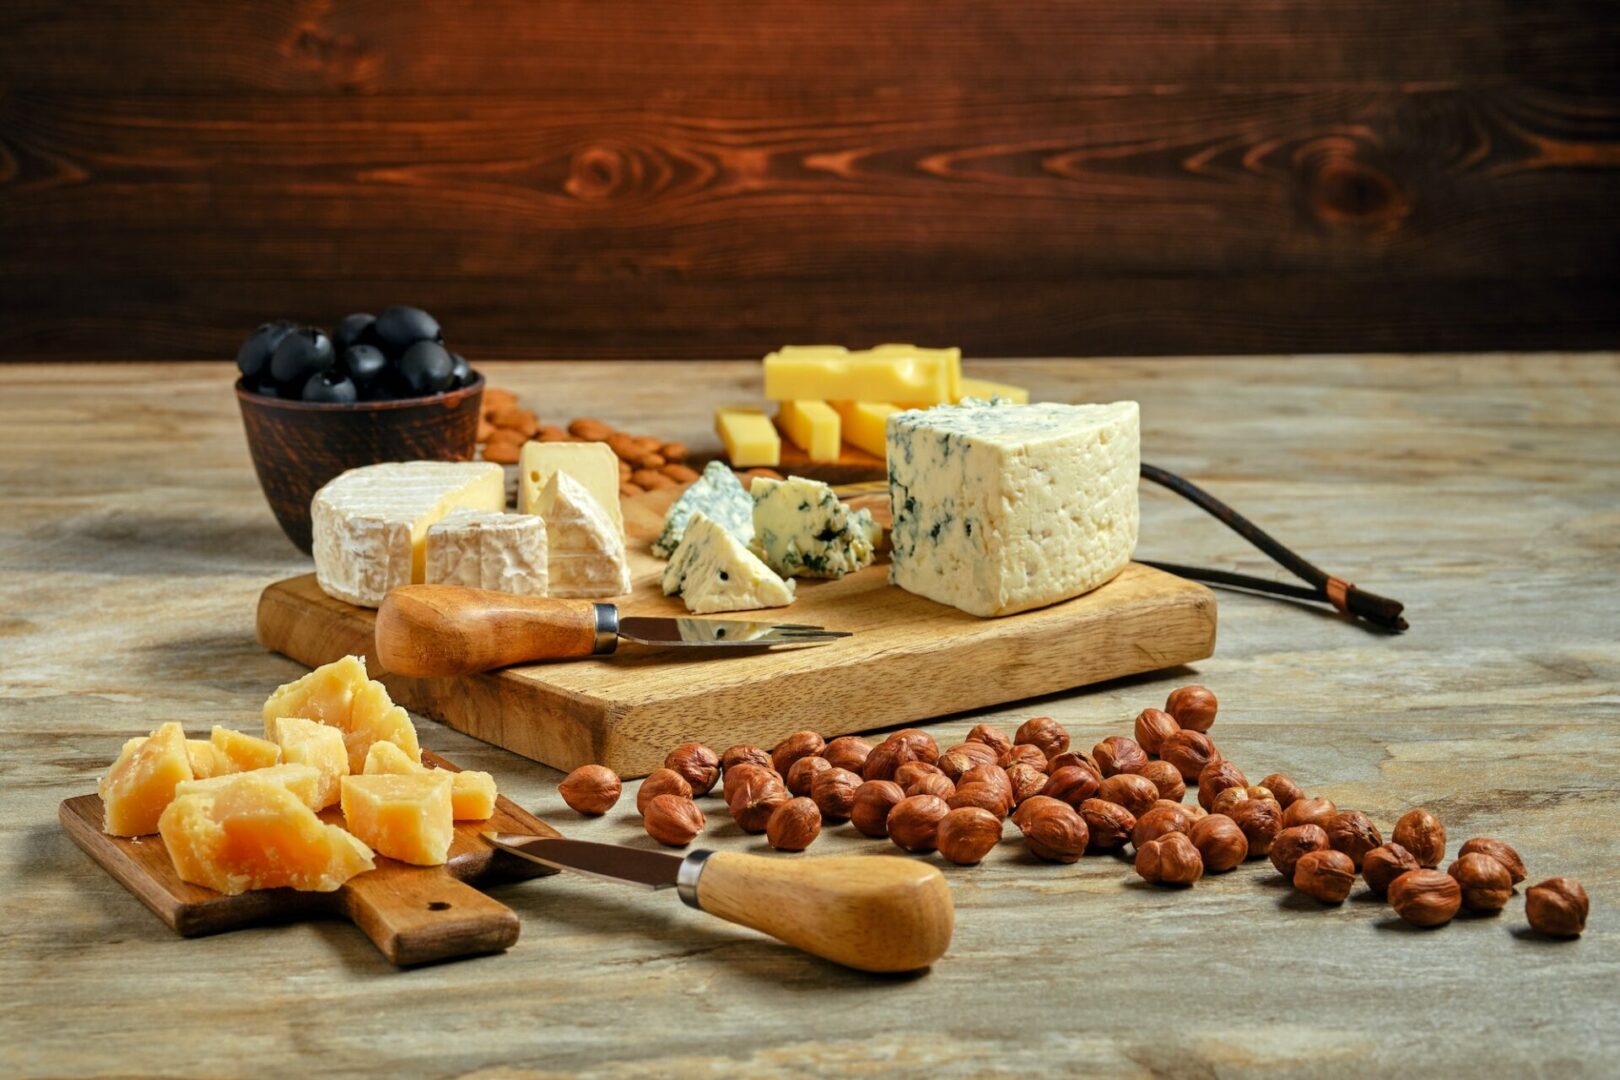 plateau de fromages